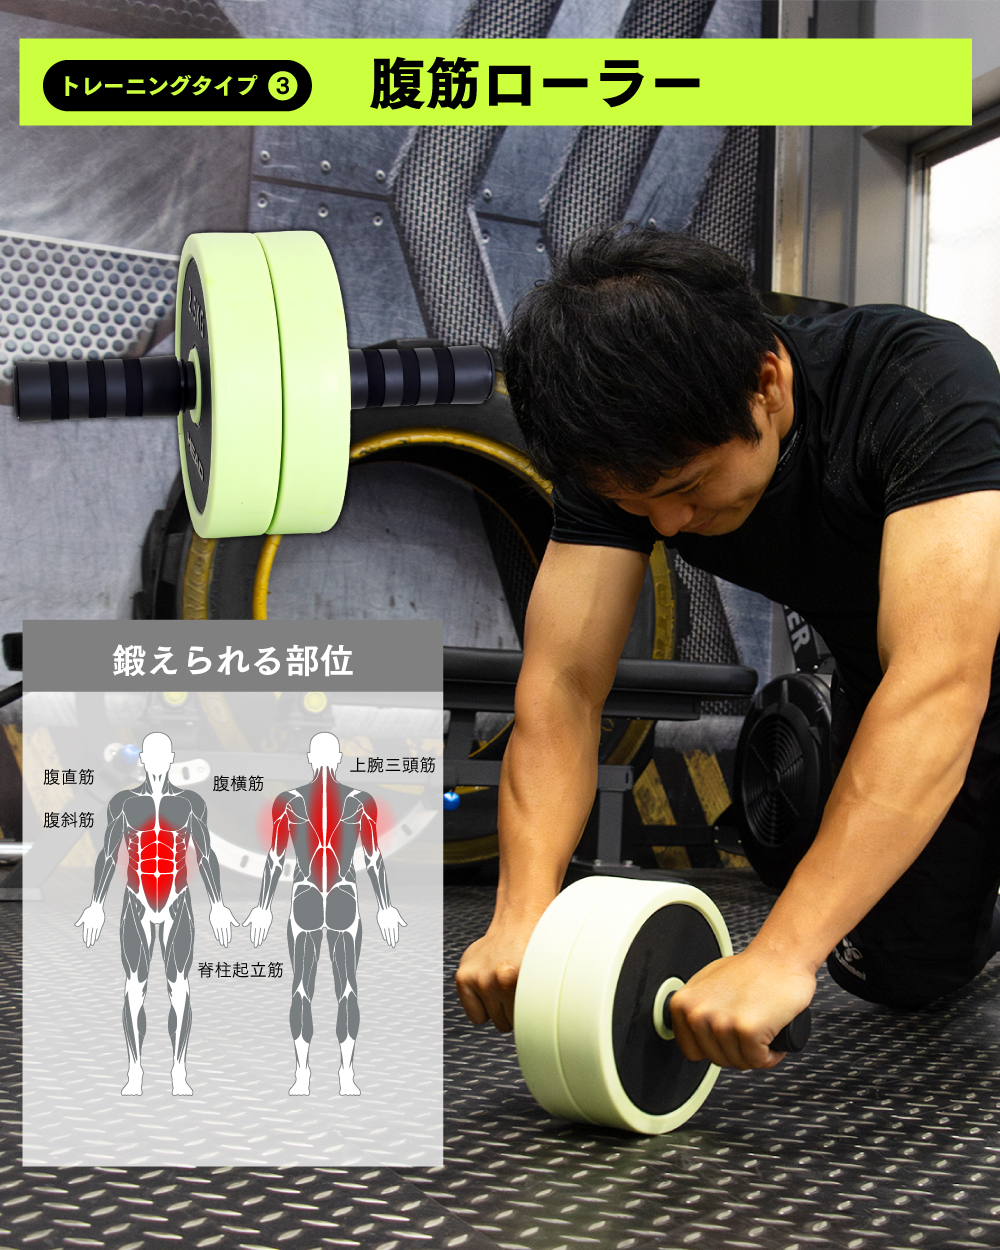 ダンベル 可変式 マルチトレーニング 20kg アドバンストセット 腹筋 